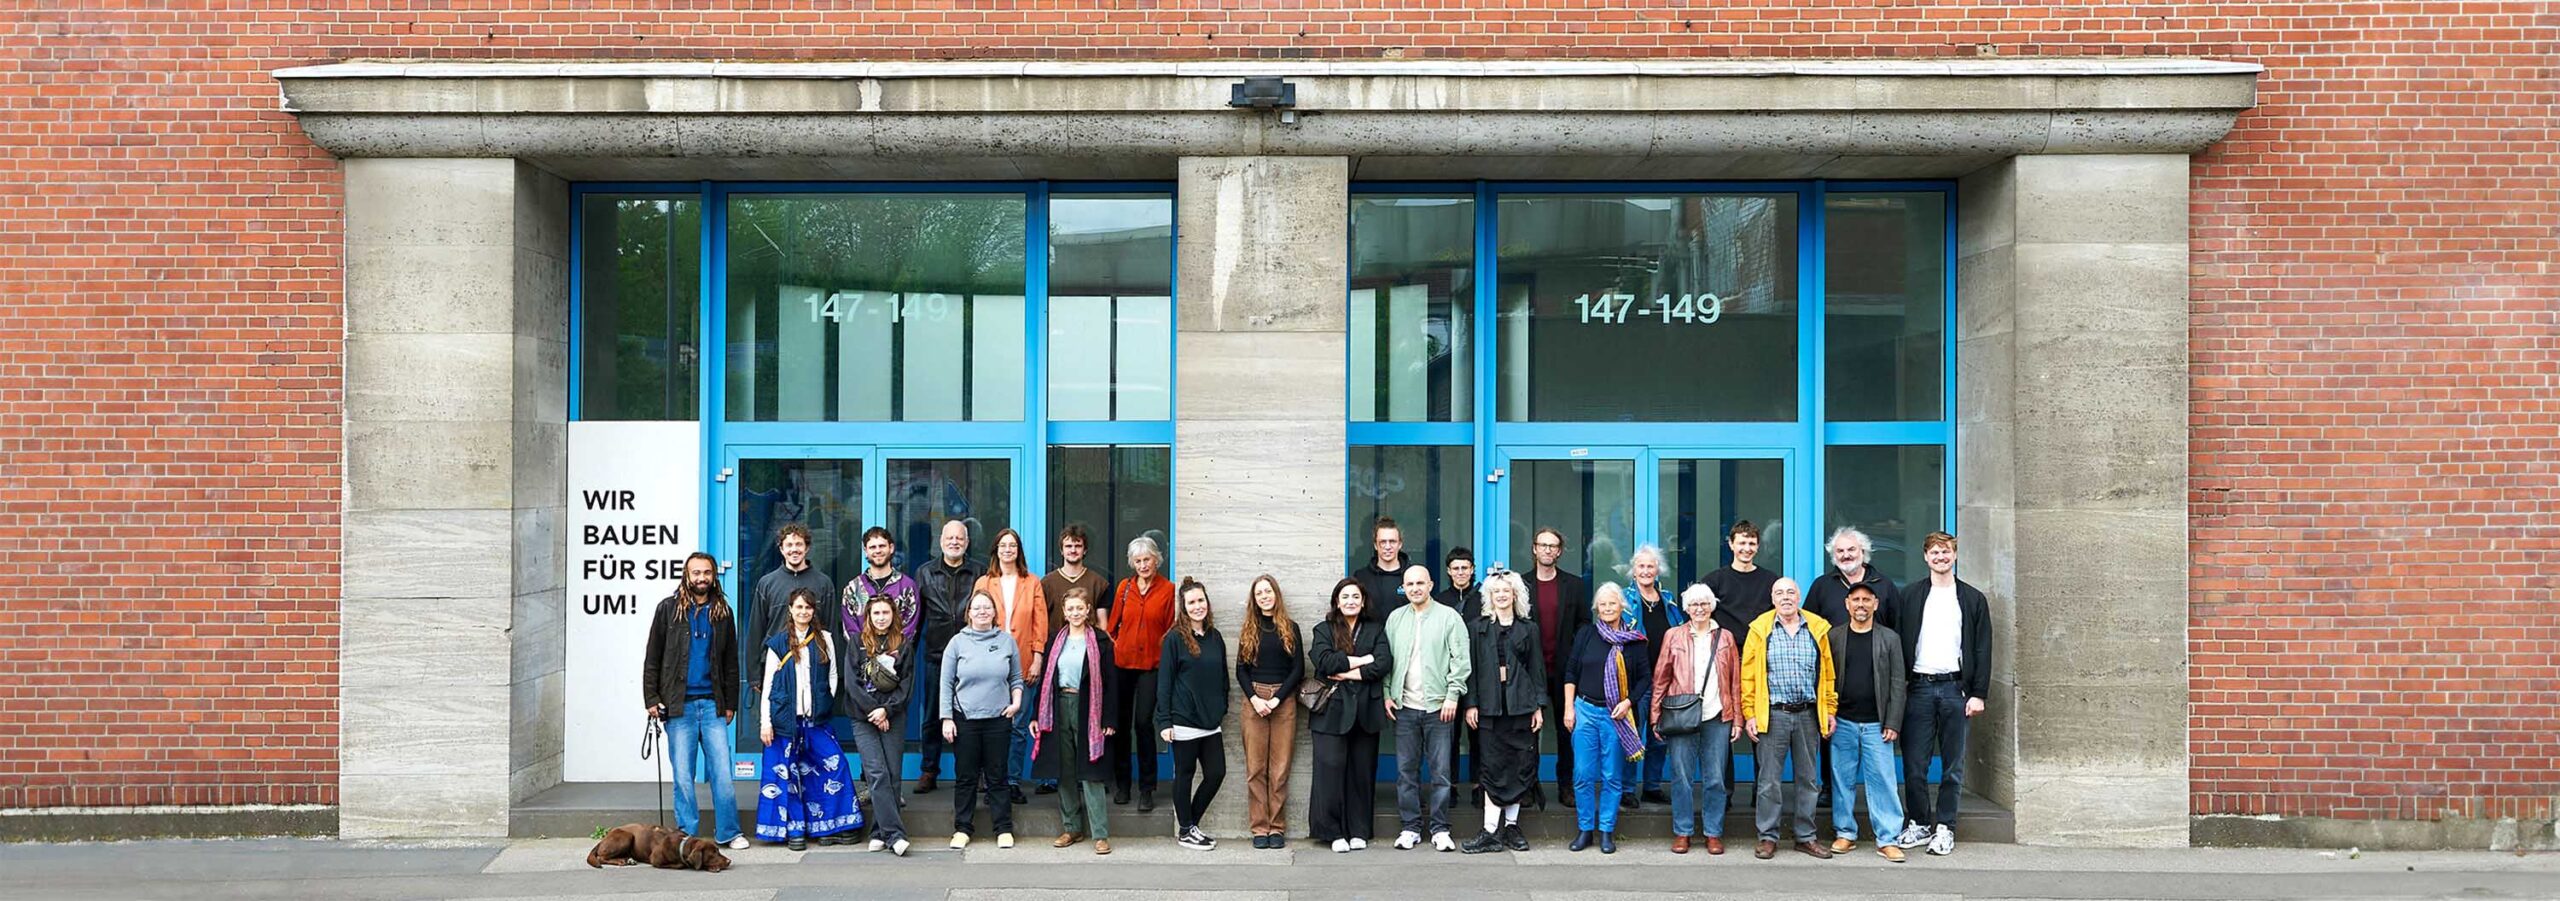 Eine Gruppe von 25 Personen steht vor dem aus blau umrahmten Glastüren bestehenden Haupteingang eines Backsteingebäudes.